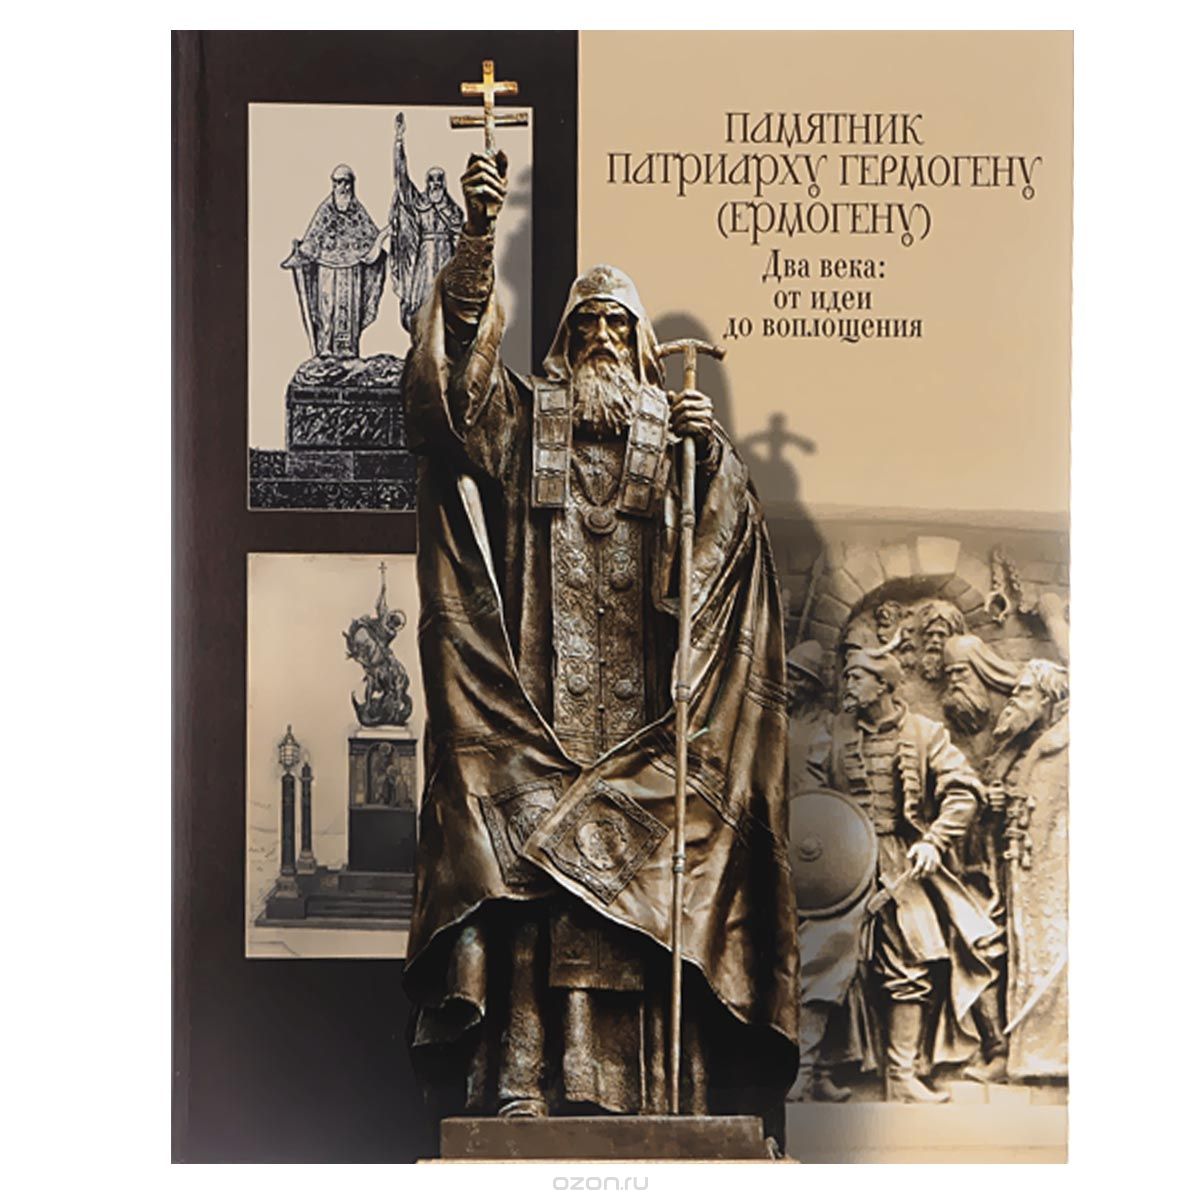 Скачать книгу "Памятник патриарху Гермогену (Ермогену). Два века: от идеи до воплощения"